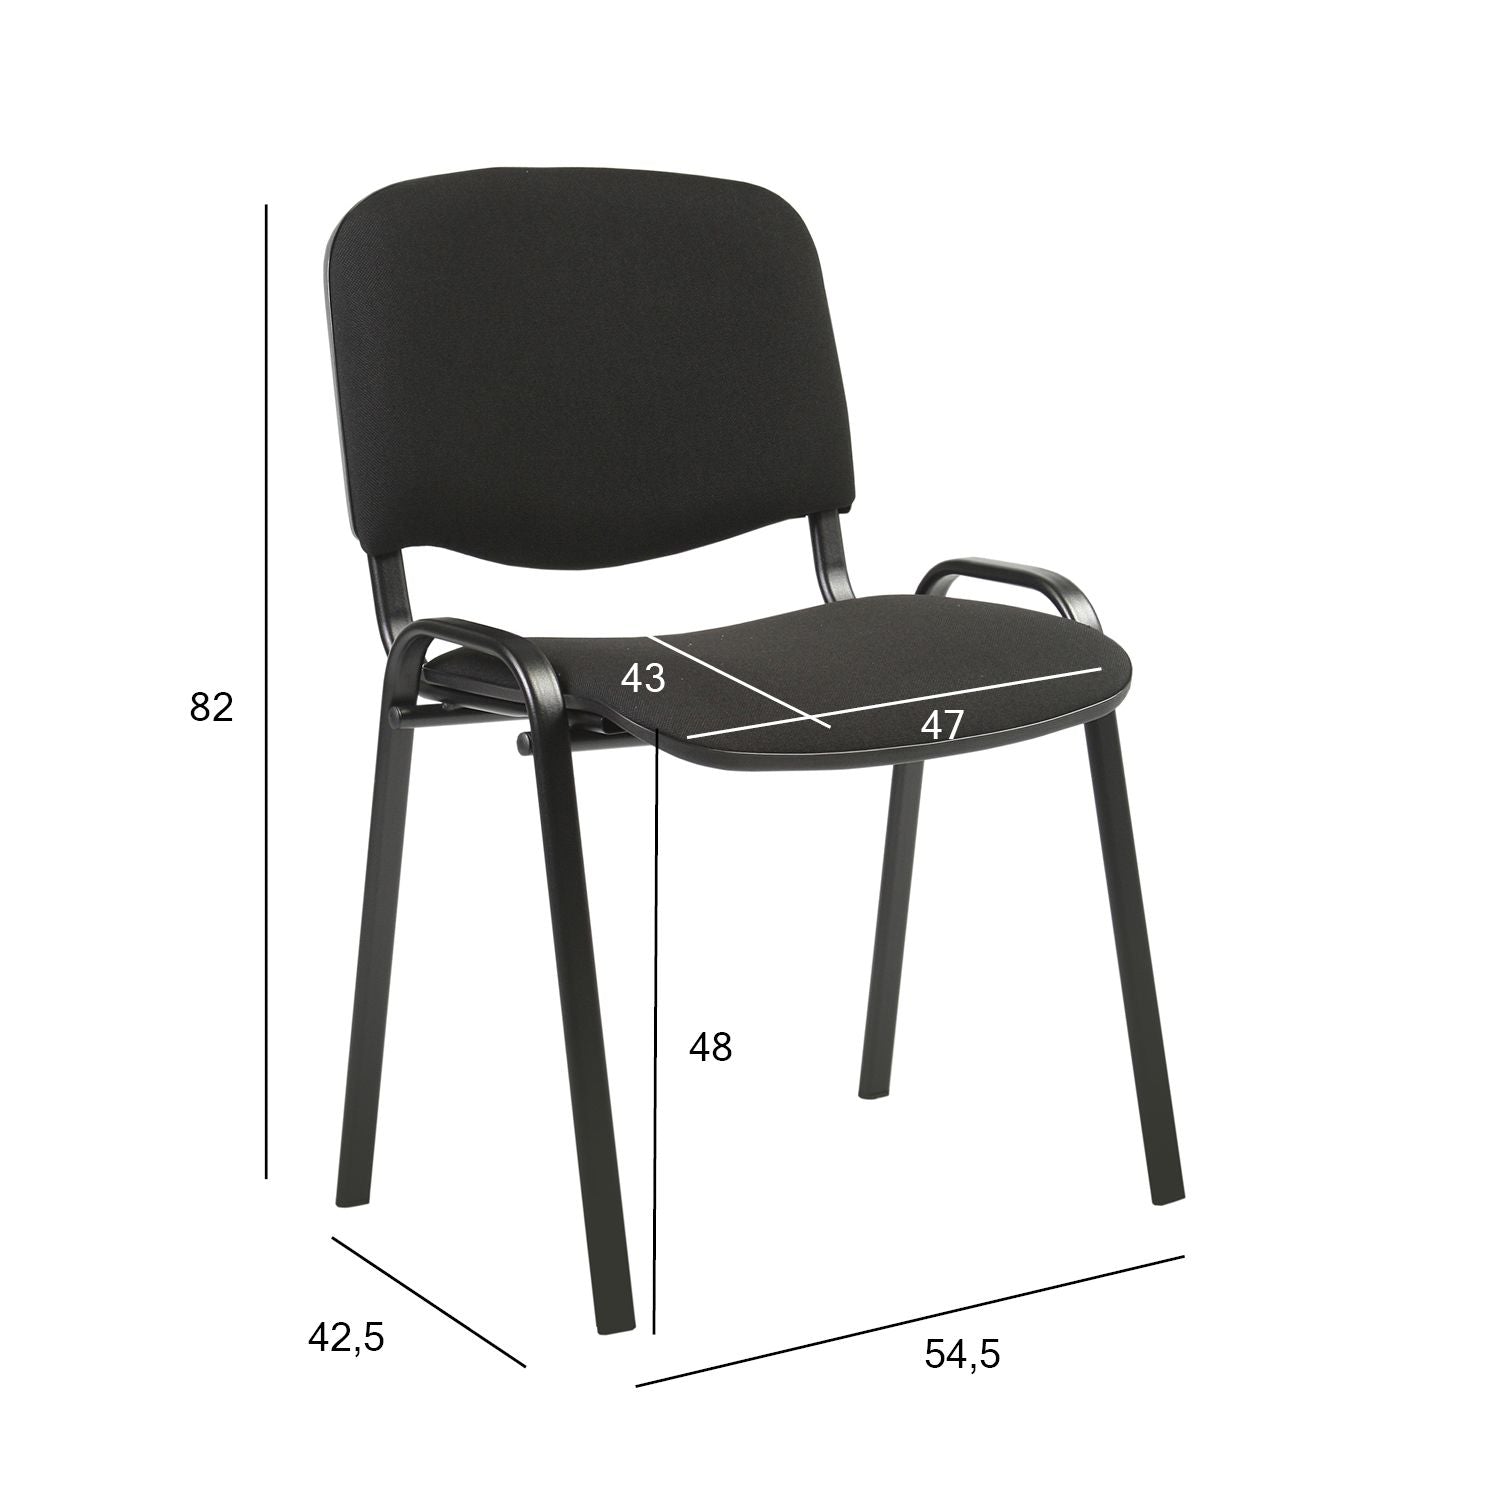 Lankytojų biuro kėdė, juodos spalvos, 54,5x42,5x82cm, 1 vnt.